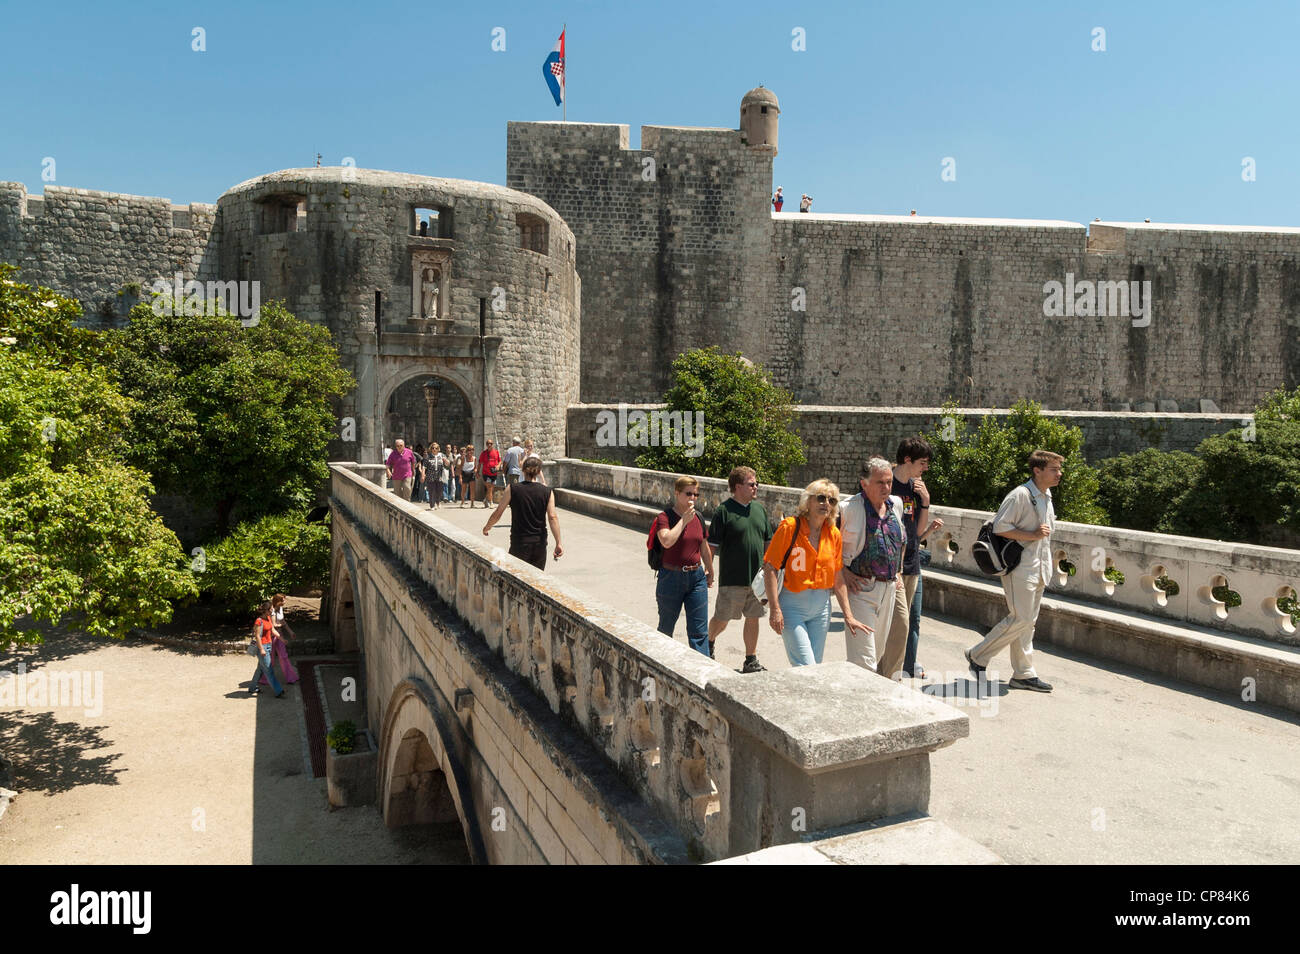 Dubrovnik, Kroatien - Touristen am Pile Gate Eingang zur Altstadt und Stadtmauer Stockfoto